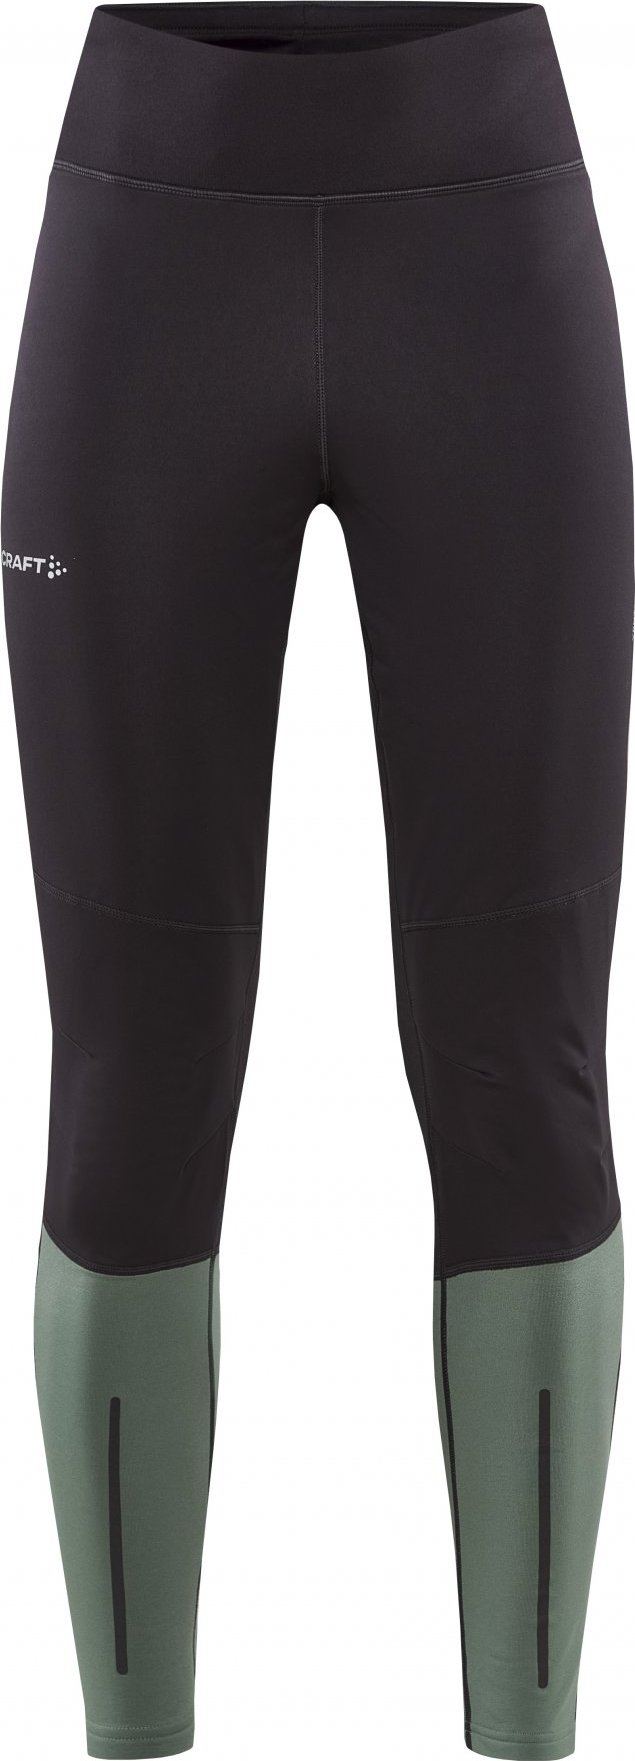 Dámské elastické kalhoty CRAFT Adv Essence Wind Tights šedé Velikost: XL